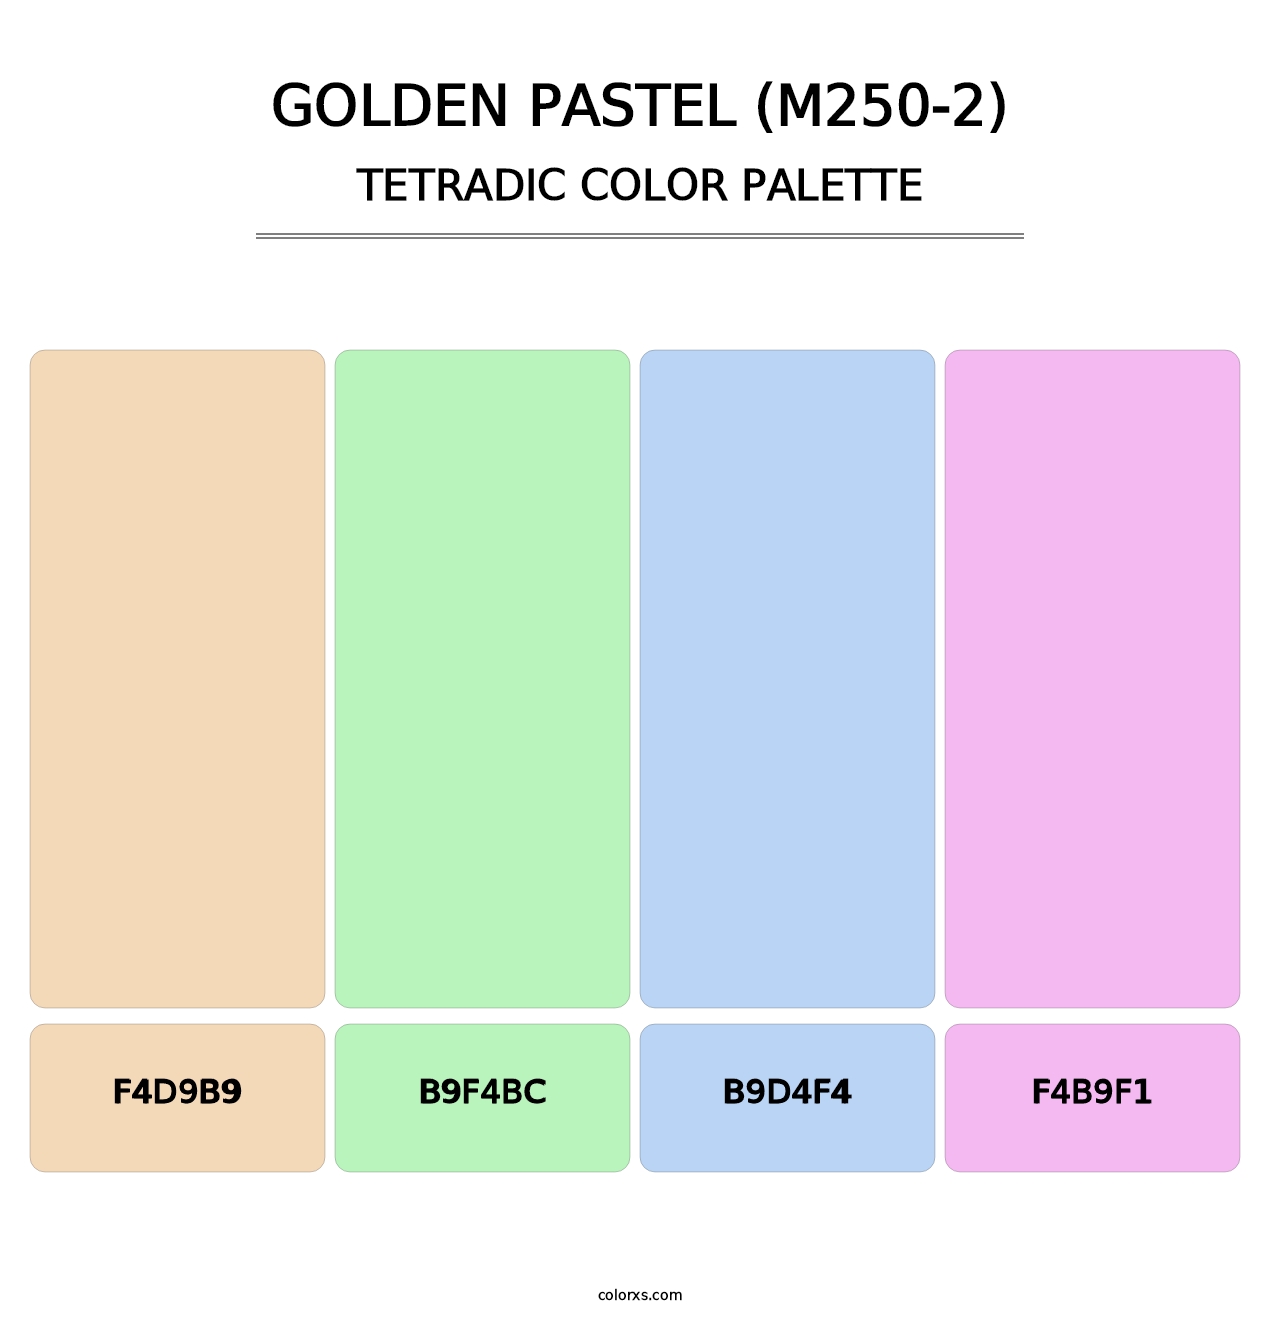 Golden Pastel (M250-2) - Tetradic Color Palette